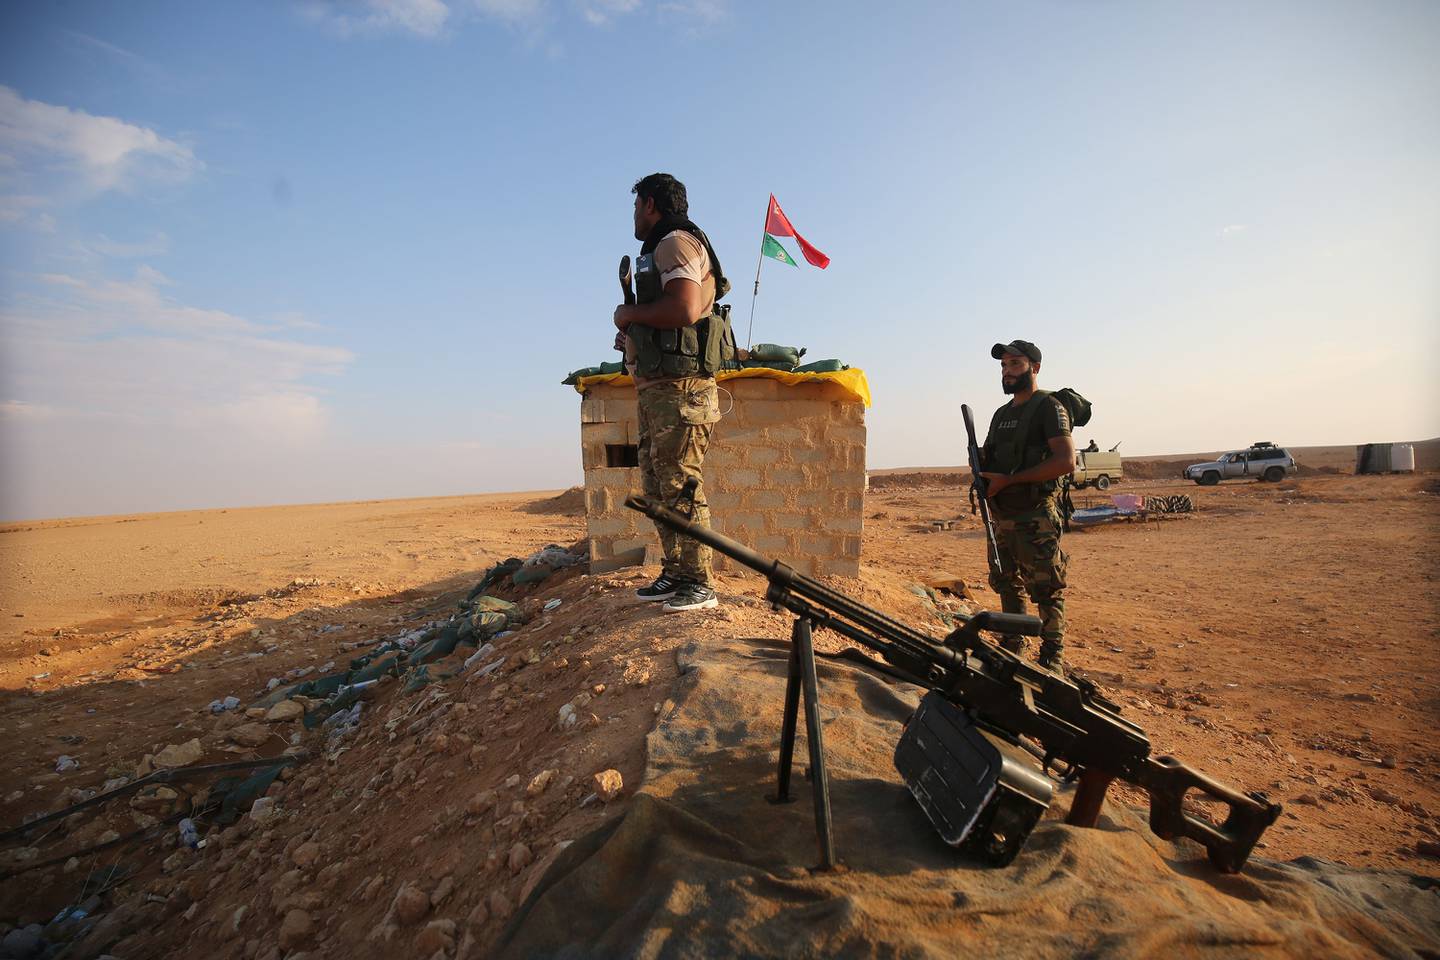 Des combattants chiites irakiens de la force paramilitaire Hashed al-Shaabi sécurisent la frontière à al-Qaim dans la province d'Anbar, en face d'Albu Kamal dans la région syrienne de Deir Ezzor, le 12 novembre 2018. Les troupes irakiennes ont renforcé leurs positions le long de la frontière poreuse avec la guerre voisine -la Syrie déchirée, craignant un débordement des affrontements entre les djihadistes du groupe État islamique et les forces soutenues par les États-Unis.  La force auxiliaire Hashed al-Shaabi (mobilisation populaire) a été créée par le gouvernement irakien en 2014, après un appel au djihad du chef spirituel de la communauté chiite, le grand ayatollah Ali Sistani, pour aider à la lutte contre l'EI en Irak.  / AFP / AHMAD AL-RUBAYE